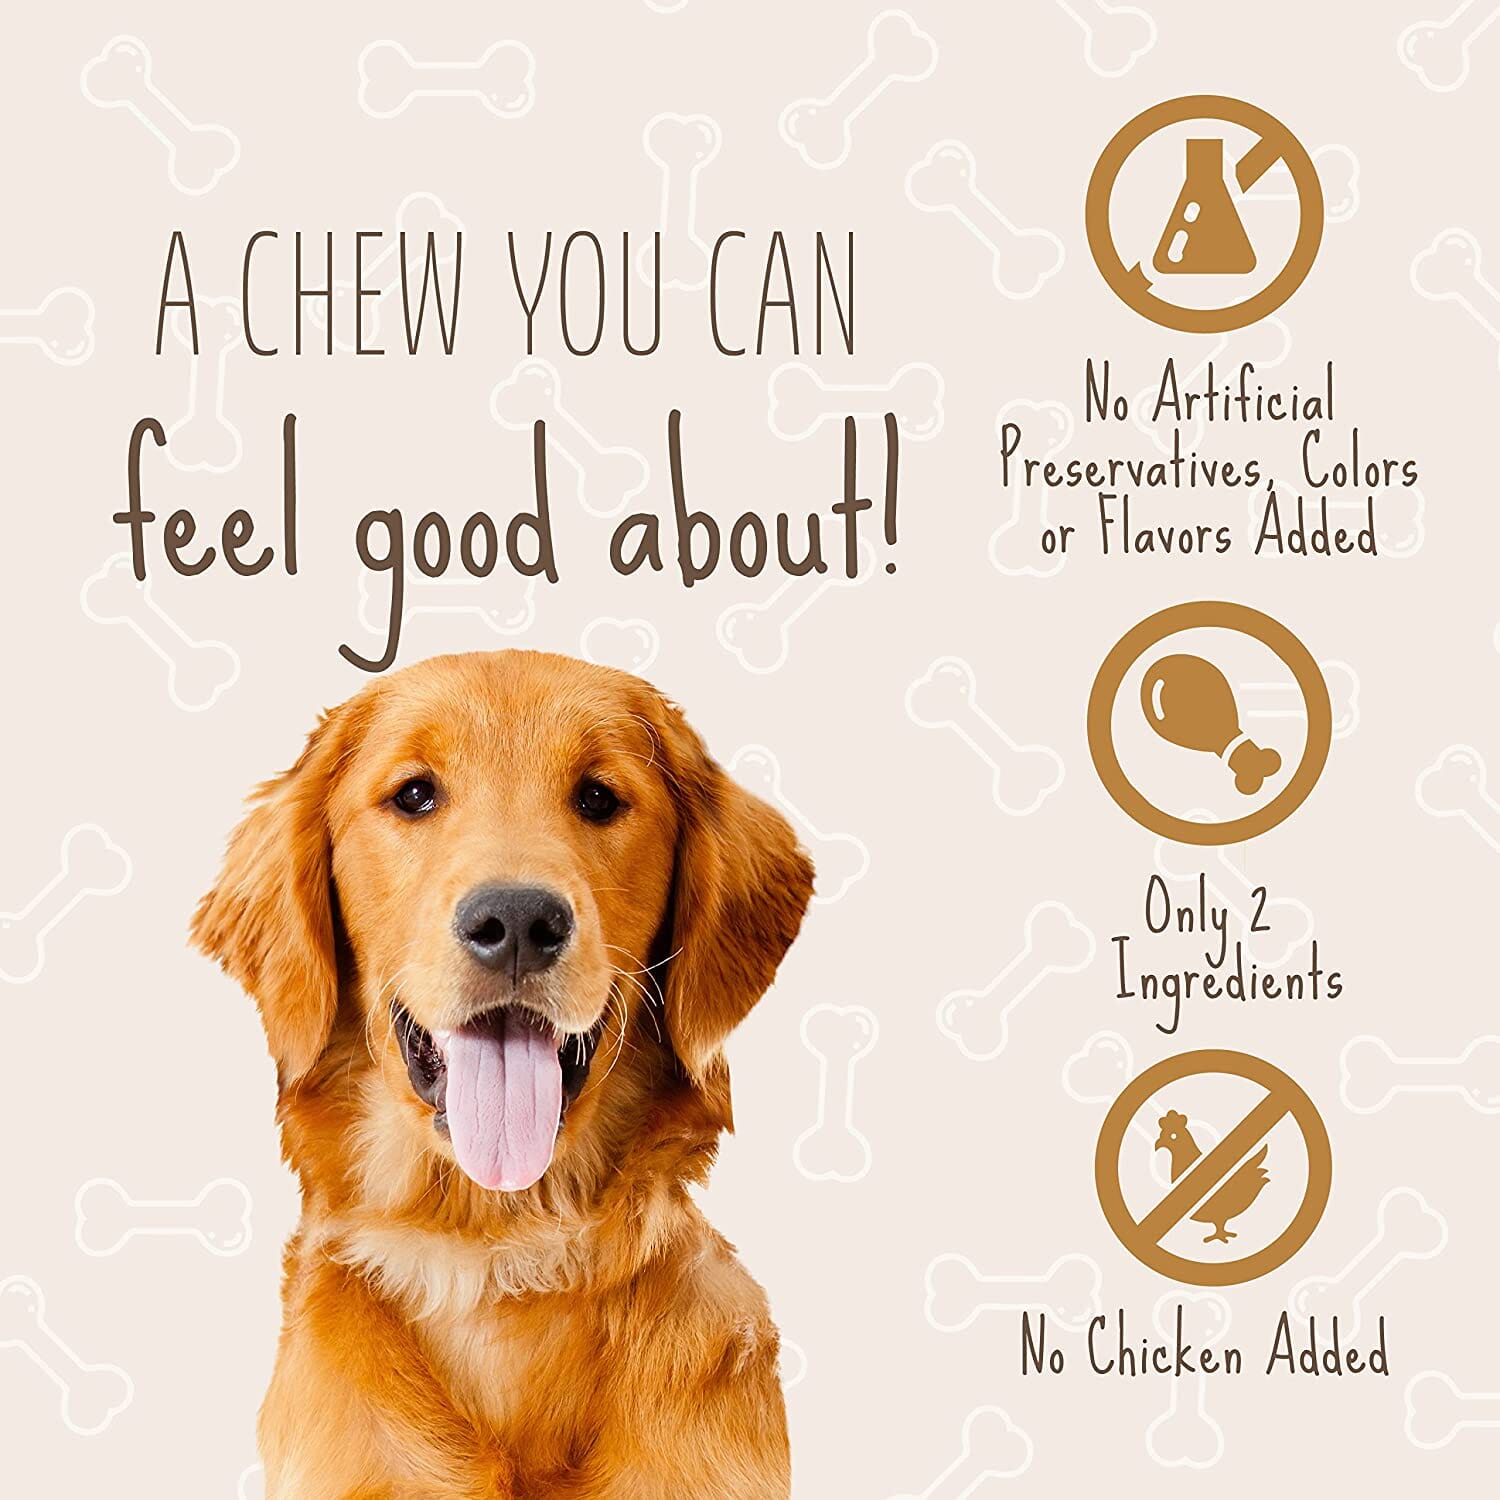 Dingo Better Belly Porkhide Chips Natural Dog Chews - 10 Oz  